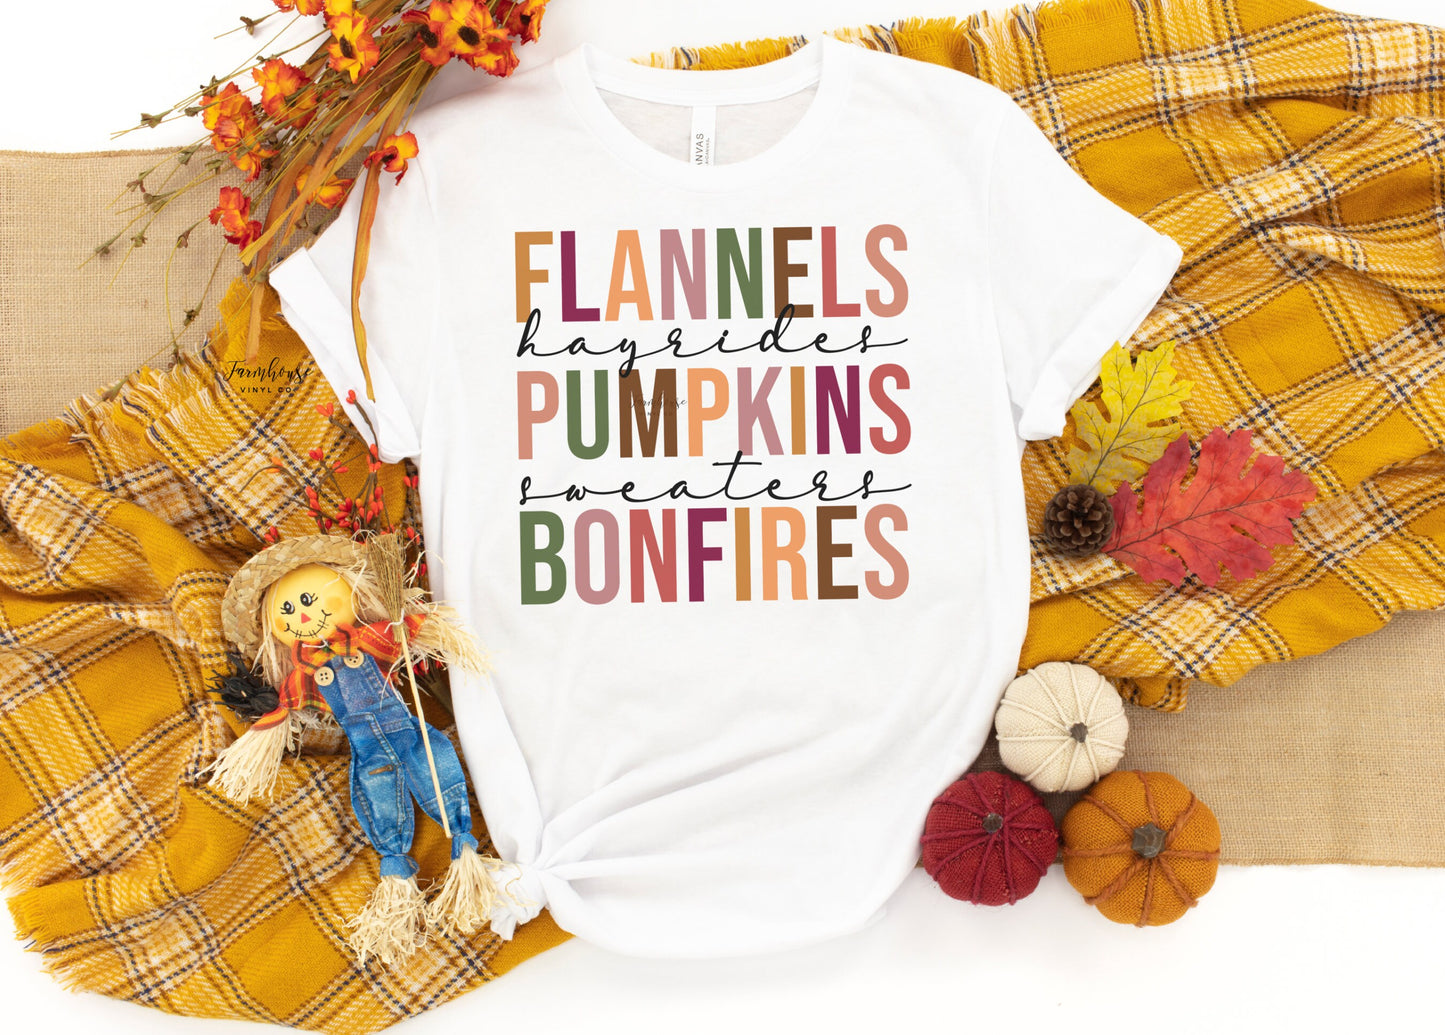 Flannels Hayrides Pumpkins Sweaters Bonfires / Thanksgiving Shirt / Cute Fall Shirt / Thanksgiving Tee / Pumpkin Spice Season / Fall - Farmhouse Vinyl Co